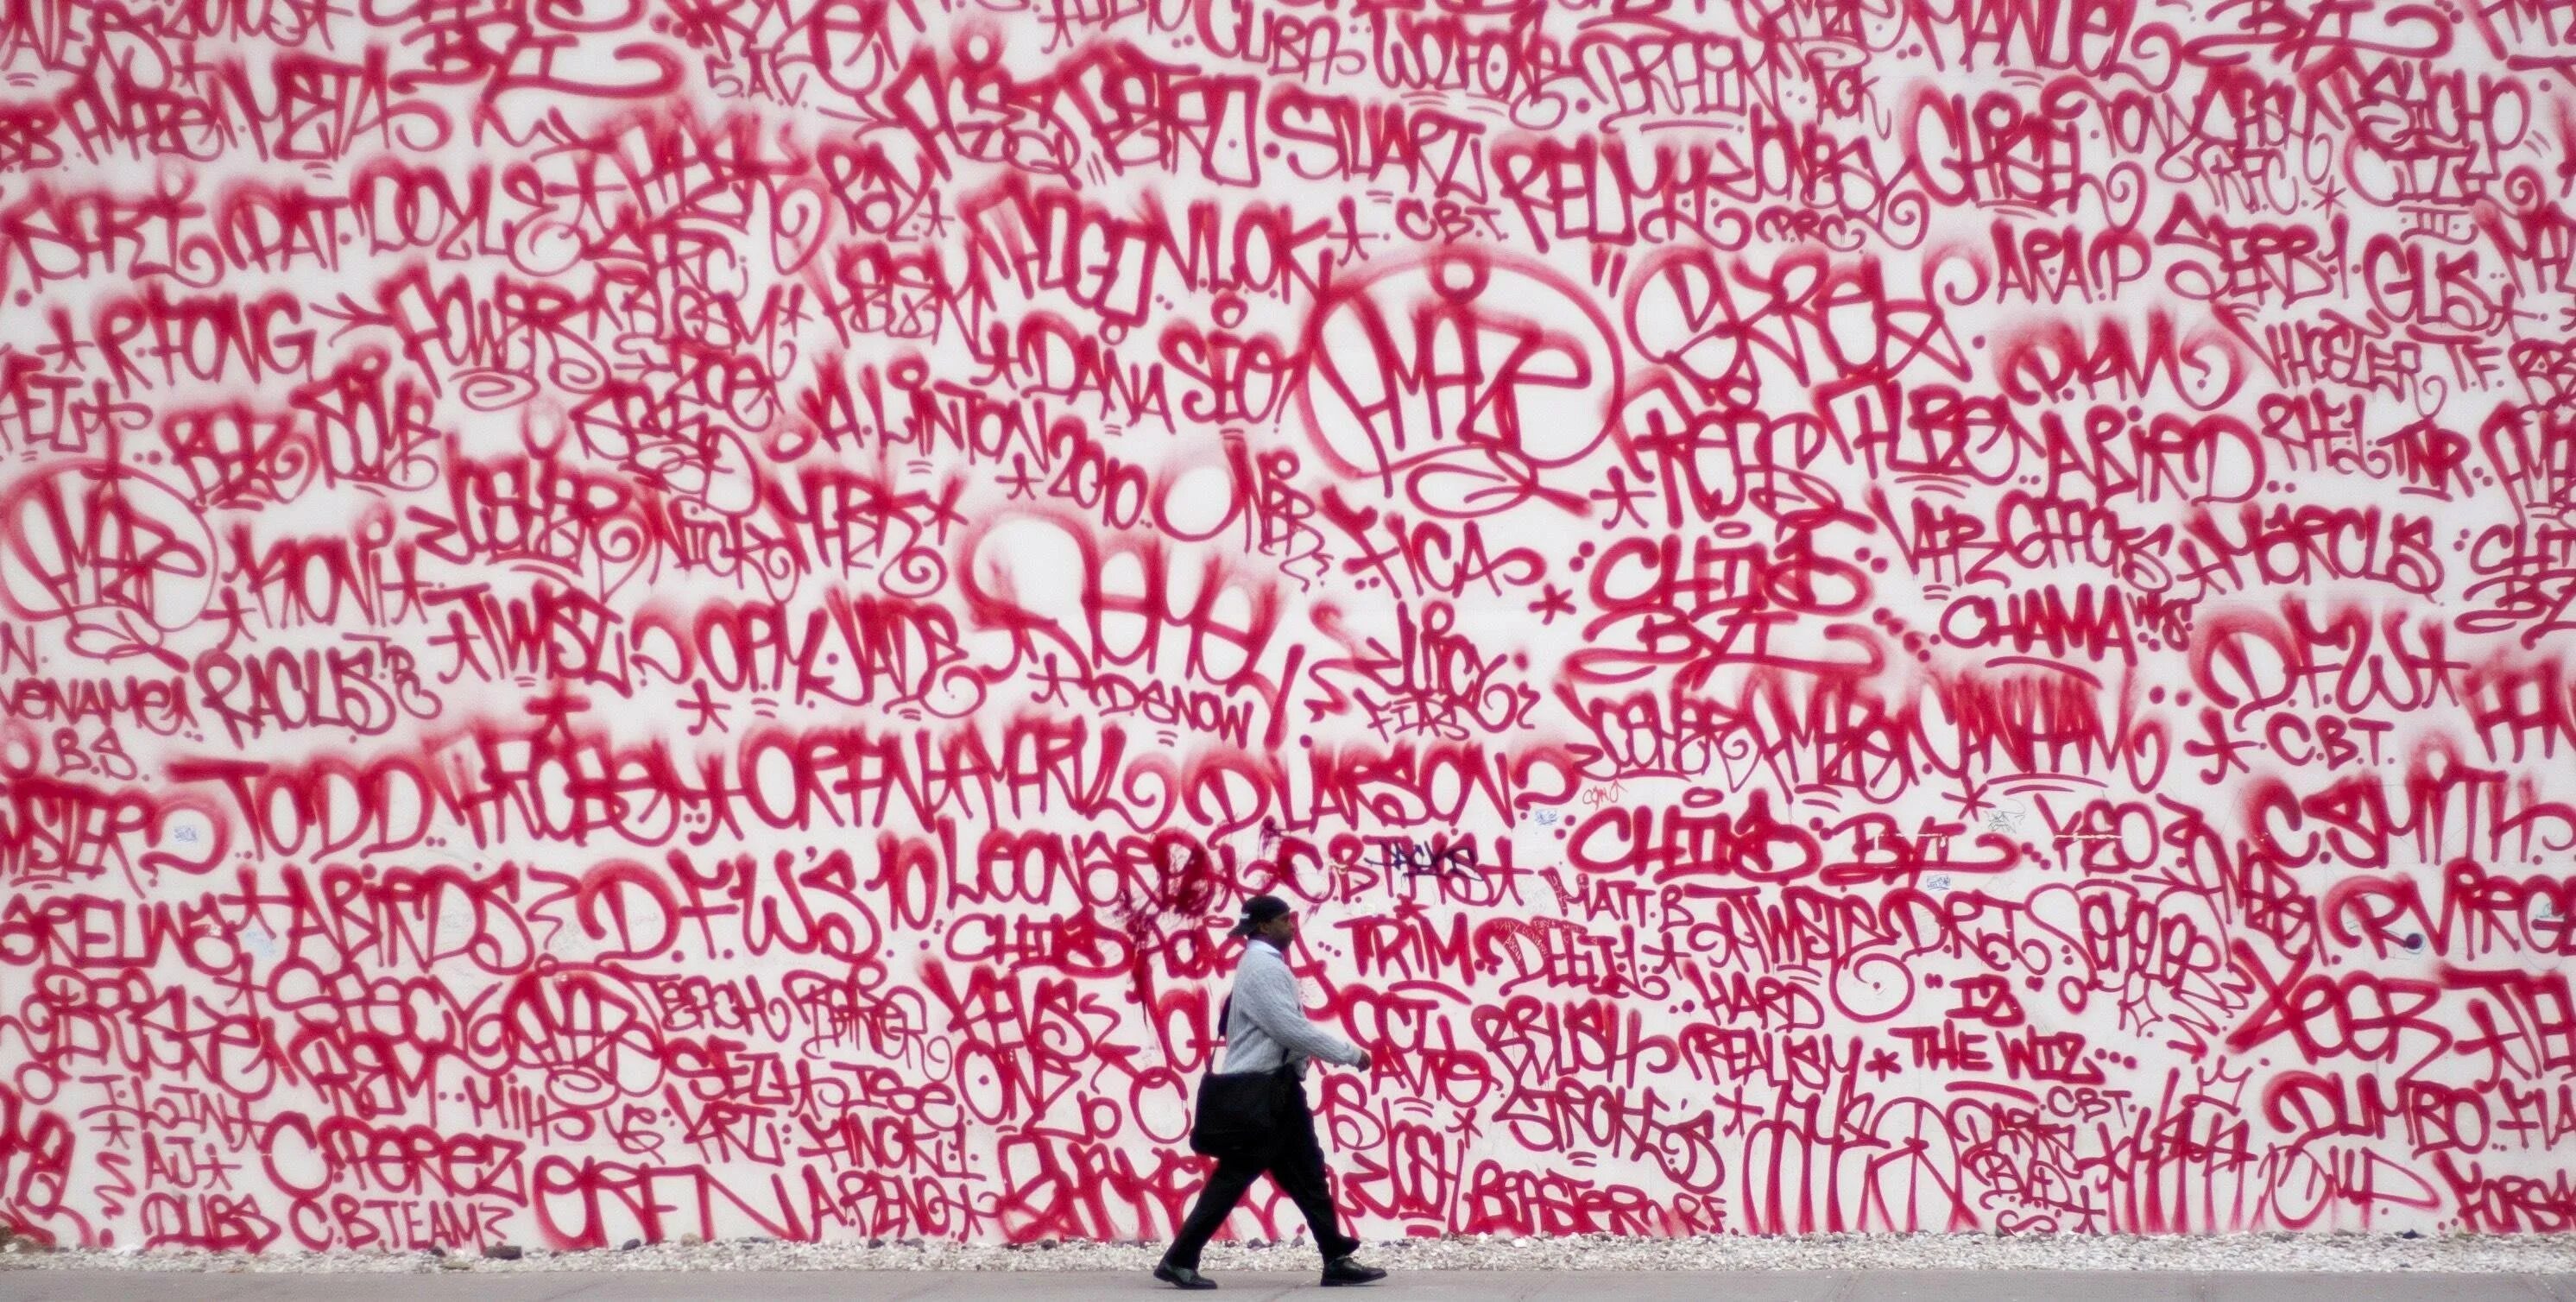 Теги граффити. Теги на стенах. Теги граффити на стенах. Самые популярные граффити.